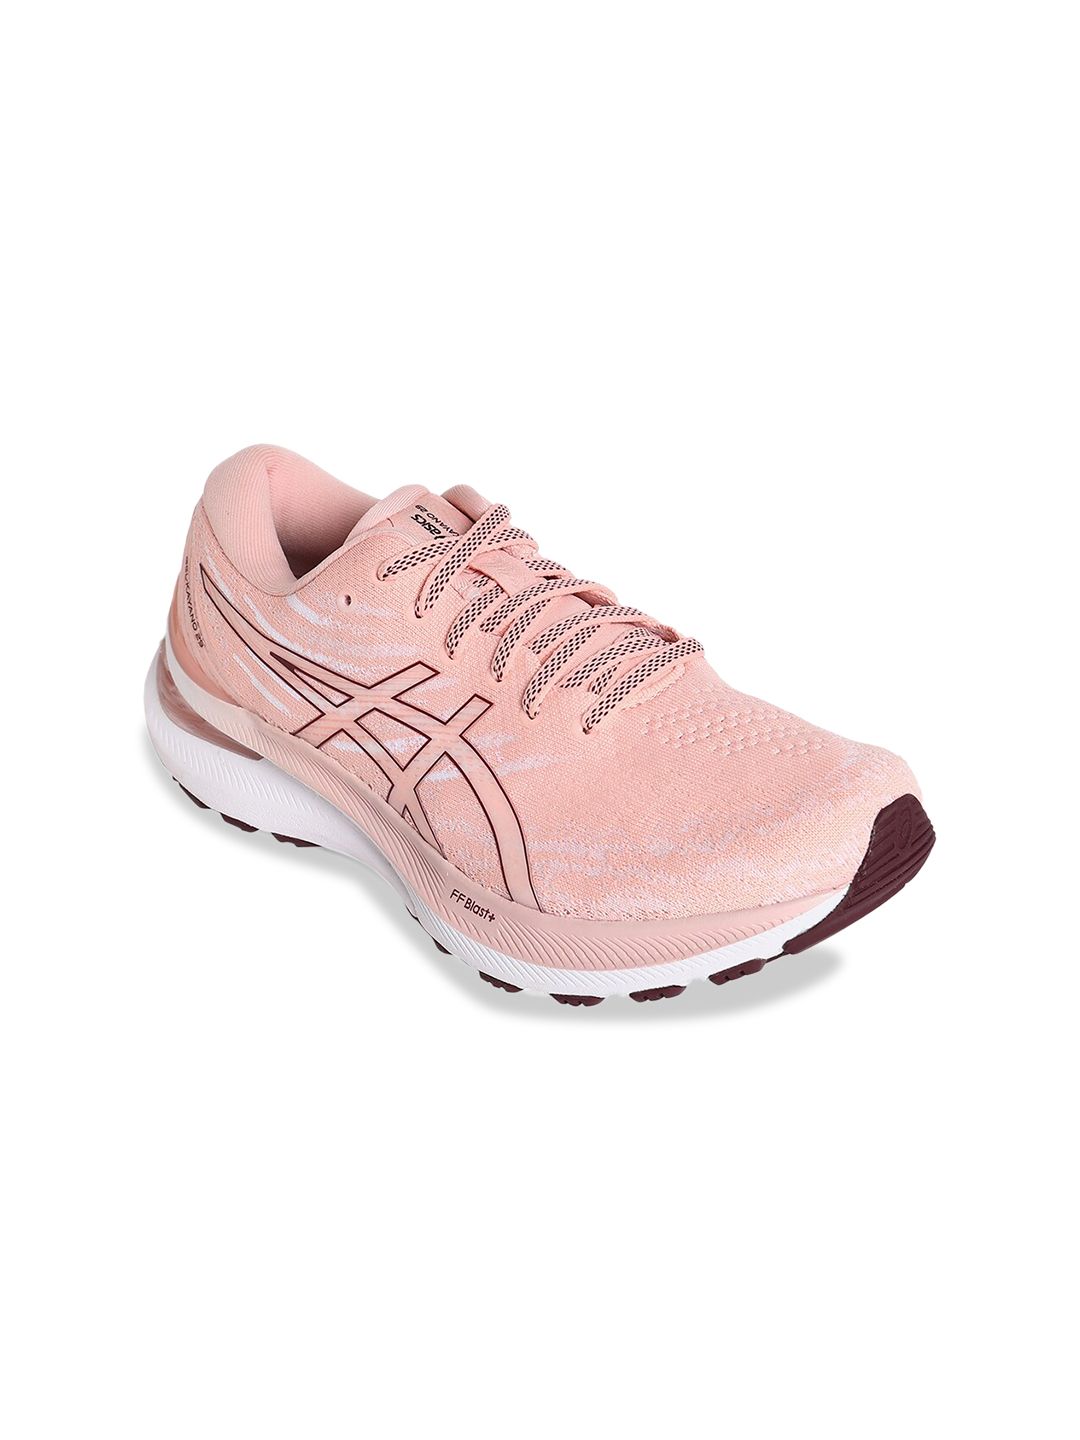 ASICS Women Pink Gel-Kayano 29 Running Non-Marking Shoes Price in India